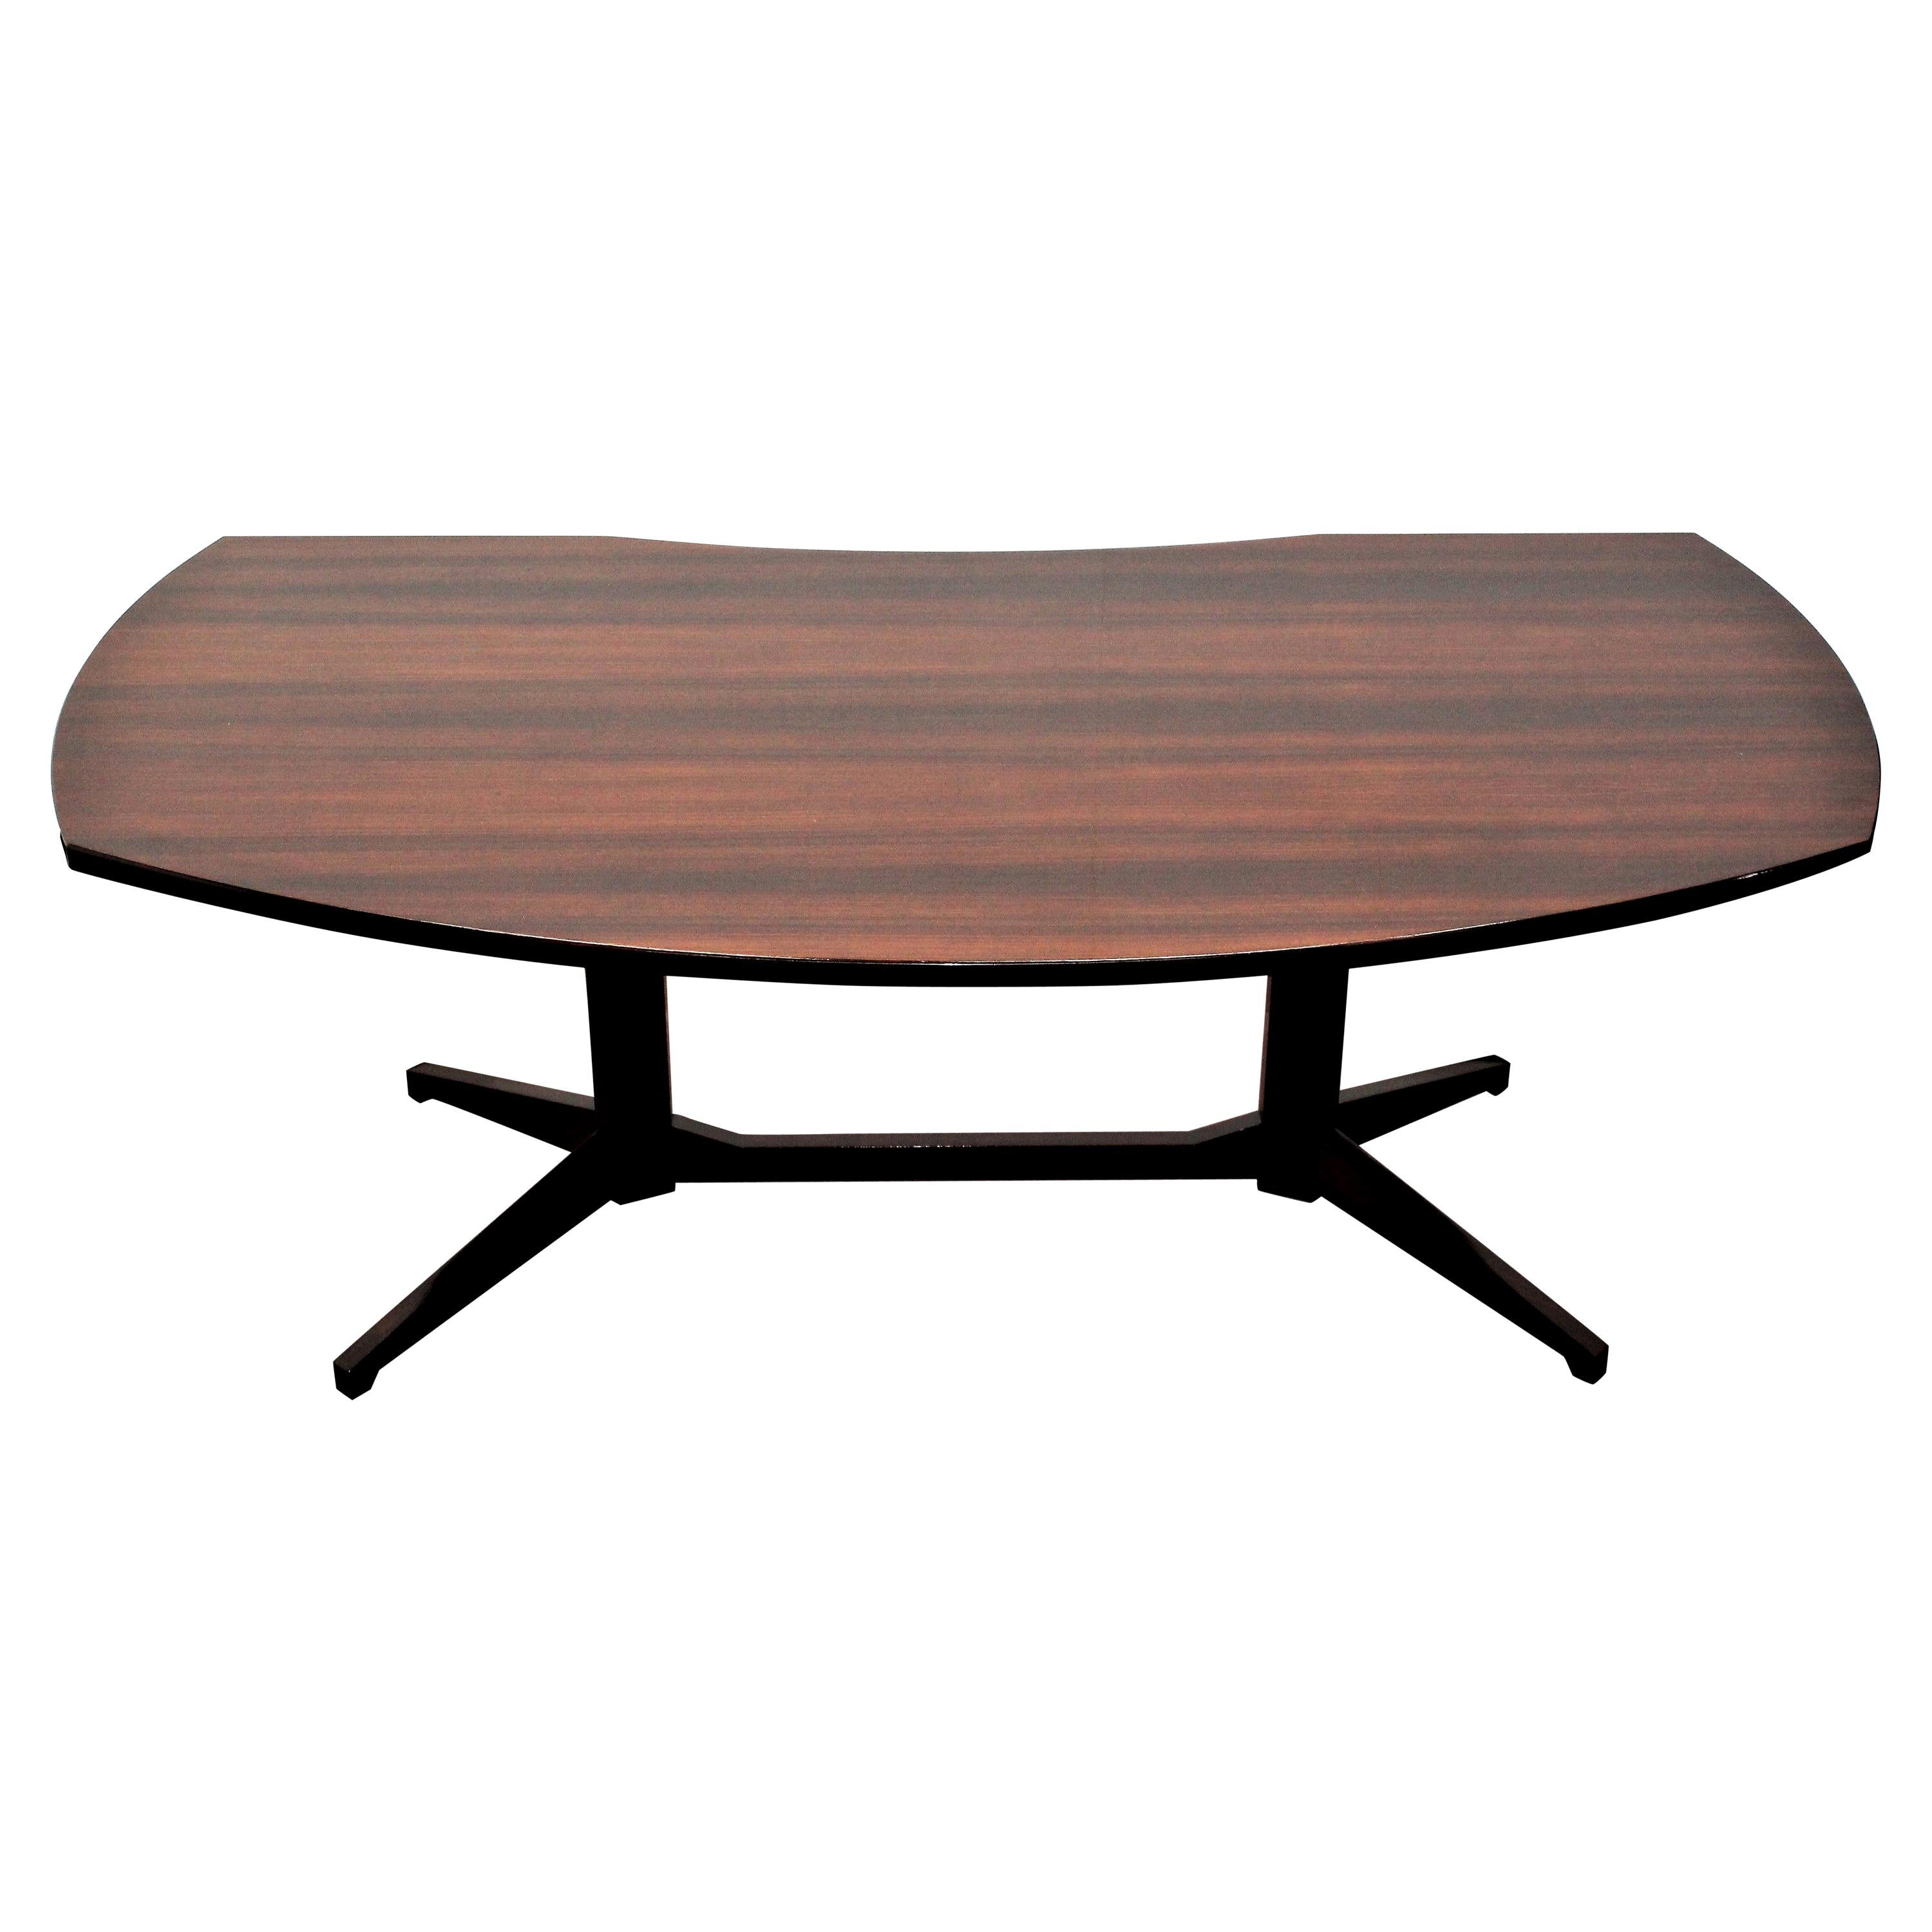 F. Albini & F. Helg for Poggi, 1958 Italy Modern Wood Desk Table "T22" Model100